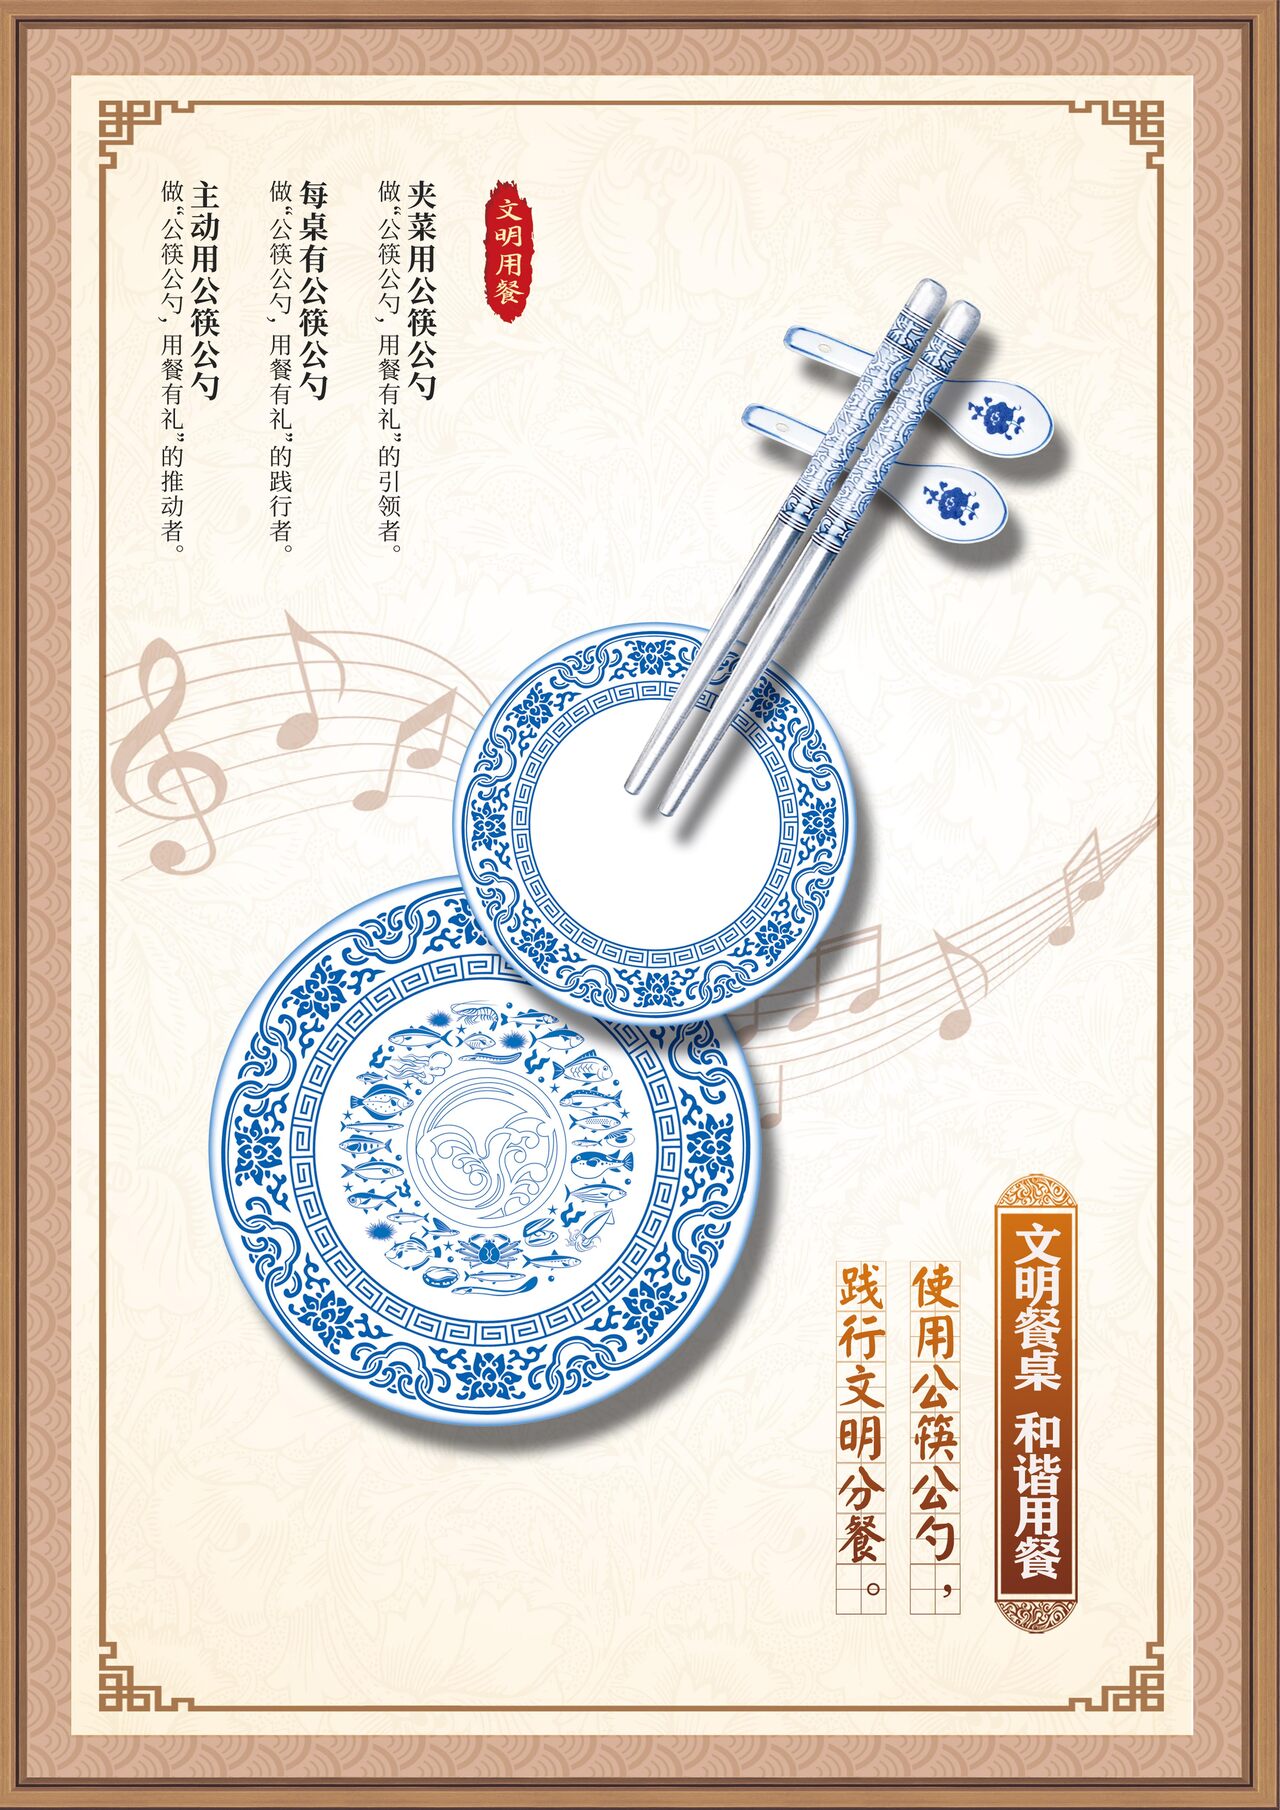 竹公筷海报图片